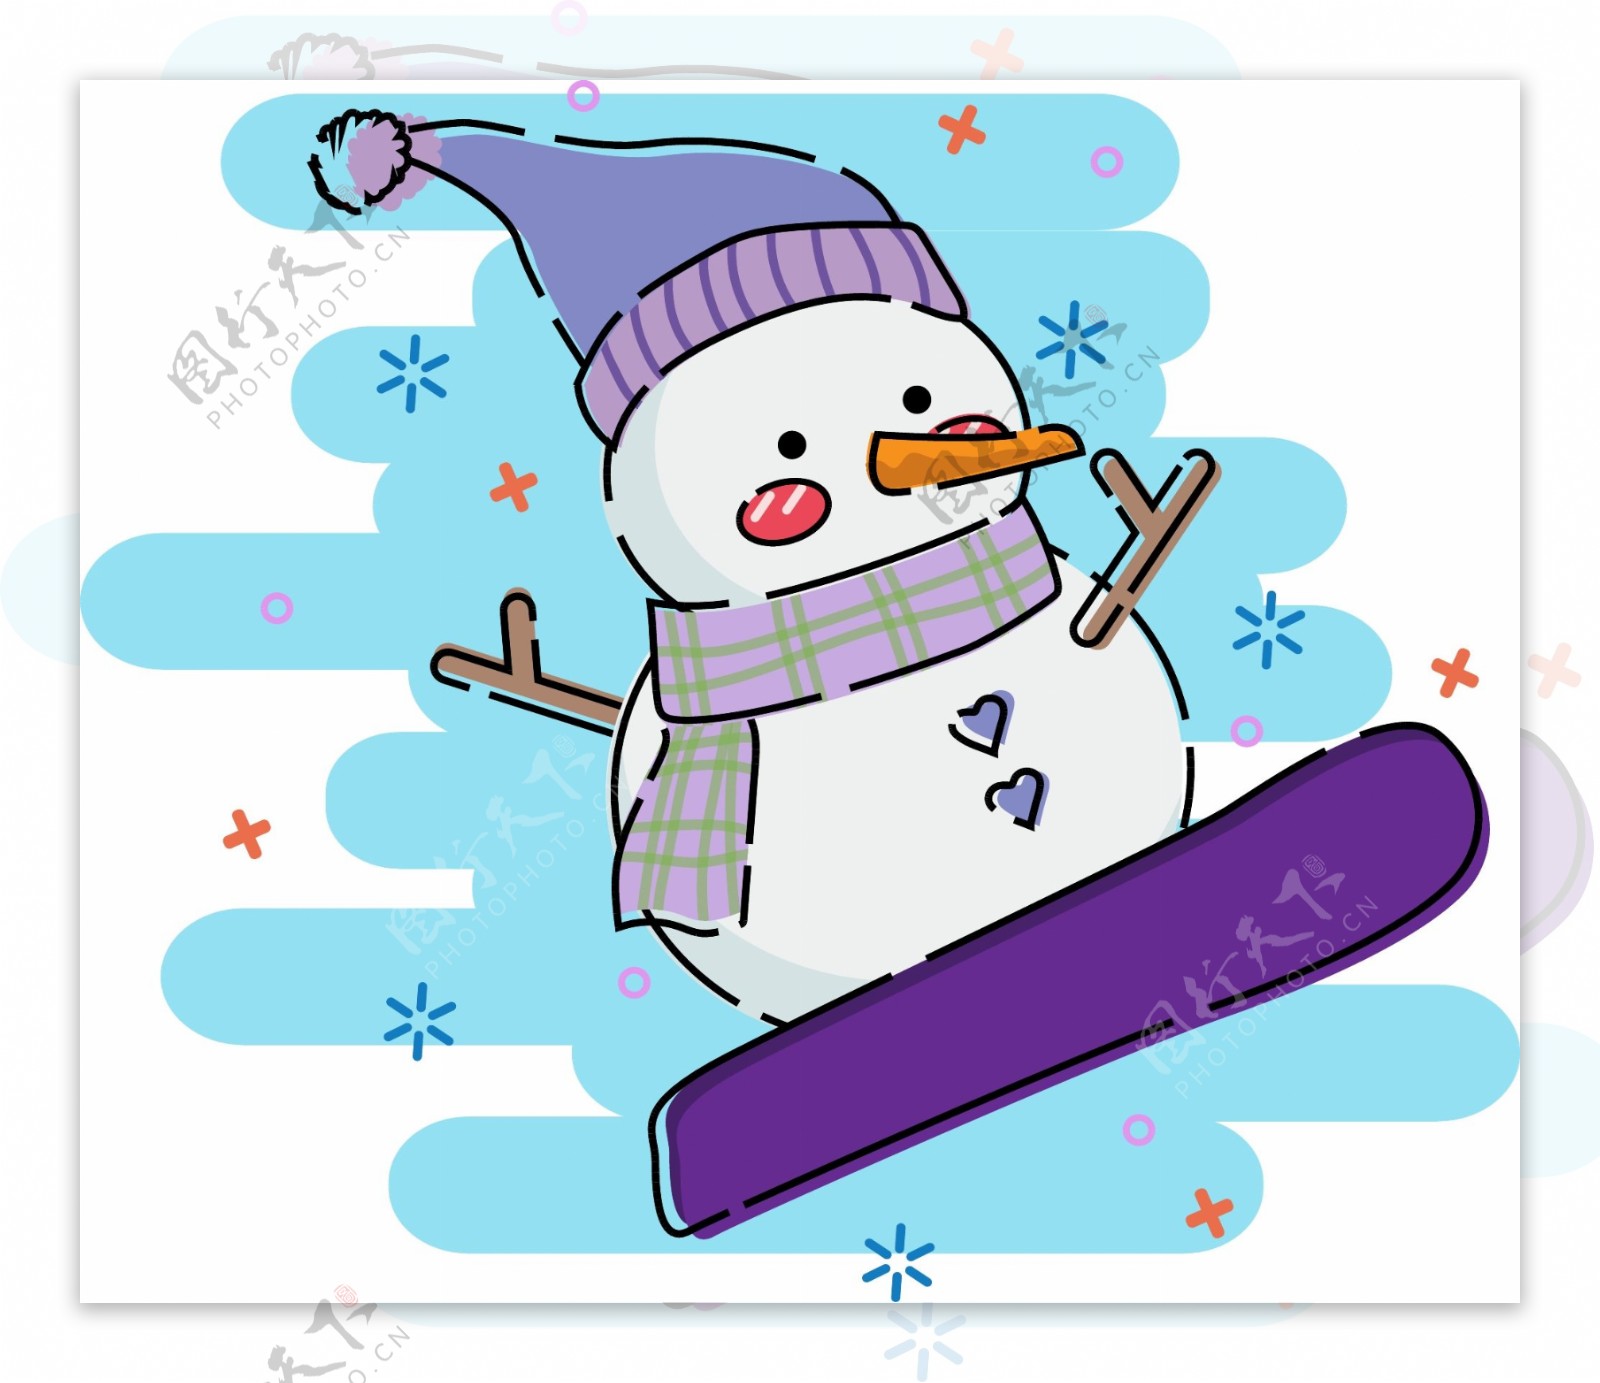 雪人娃娃紫色紫色围巾滑板